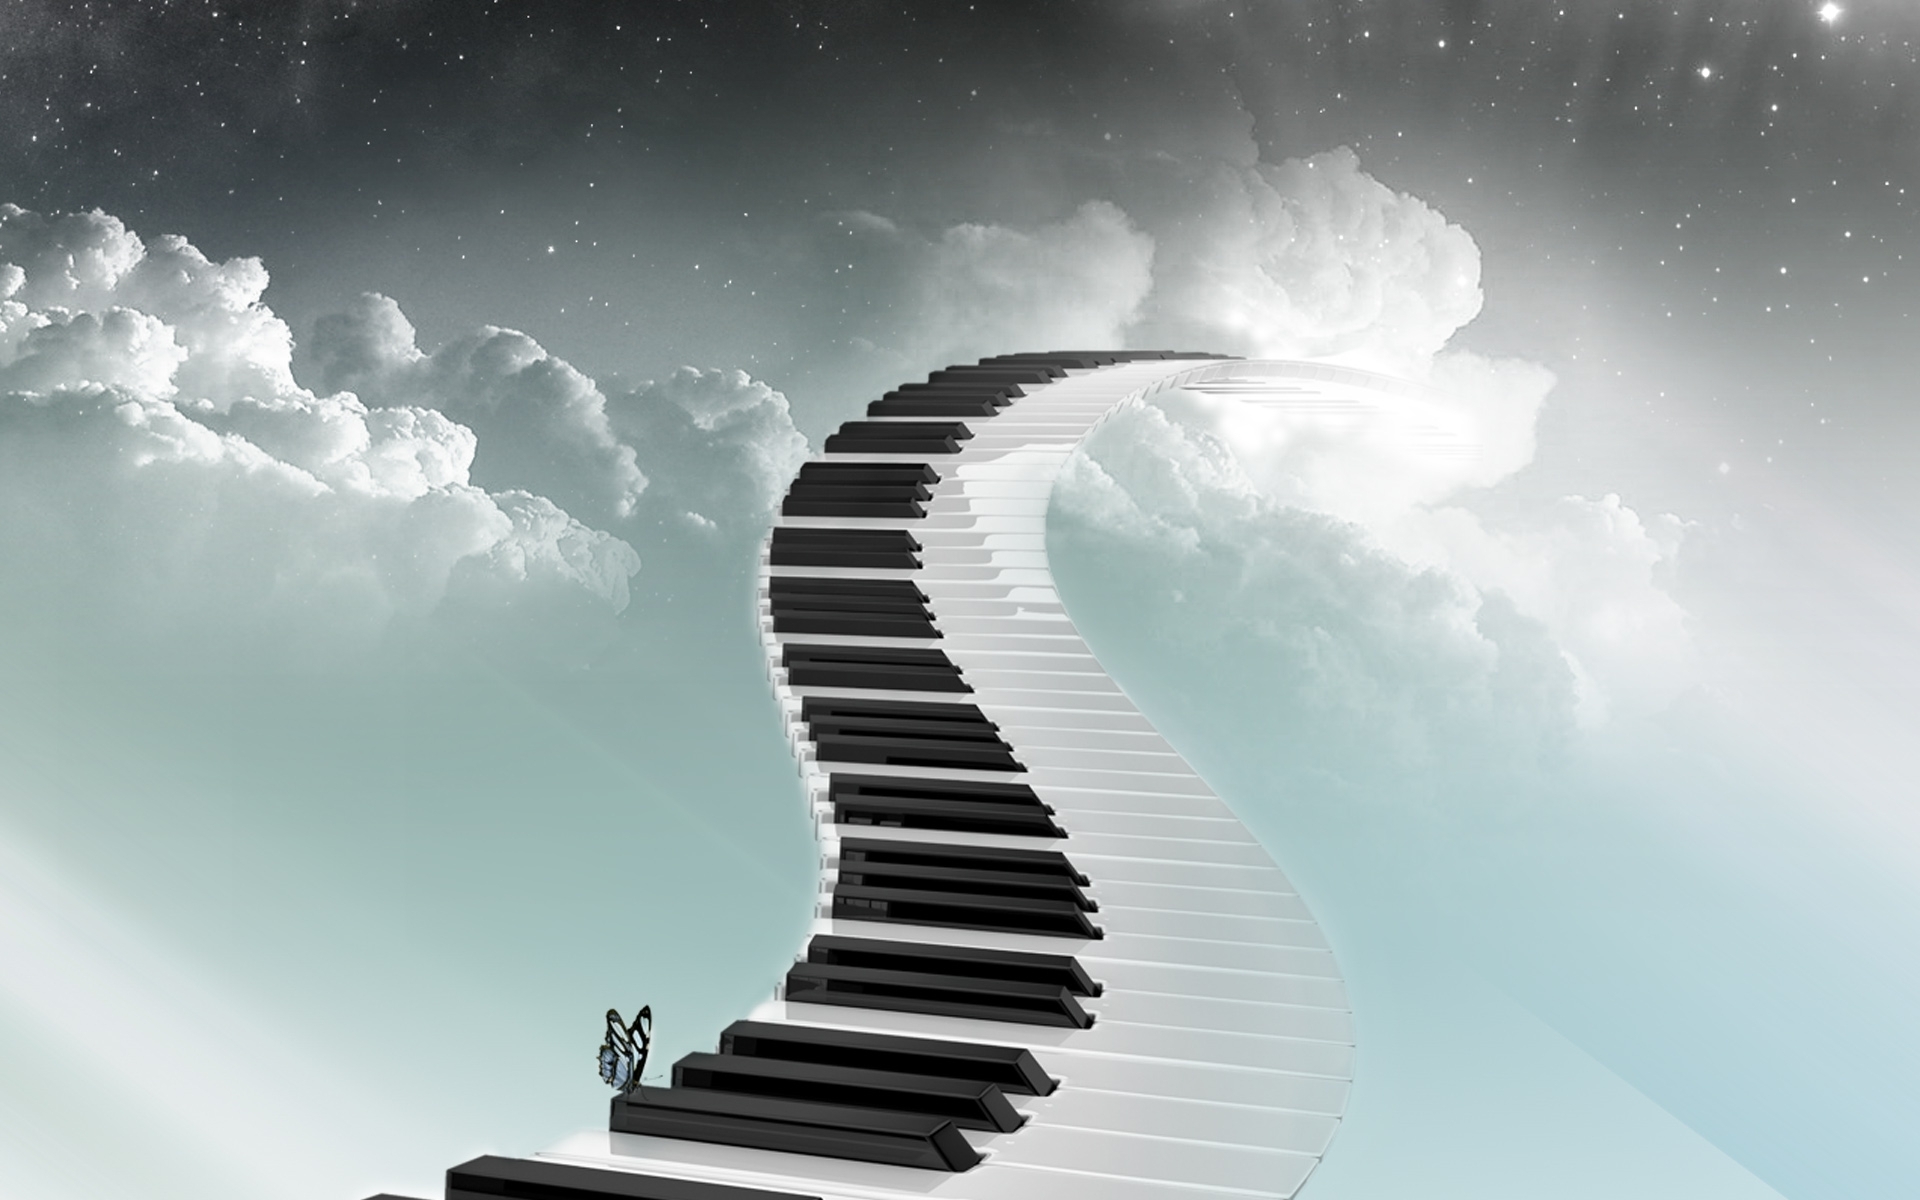 music, piano